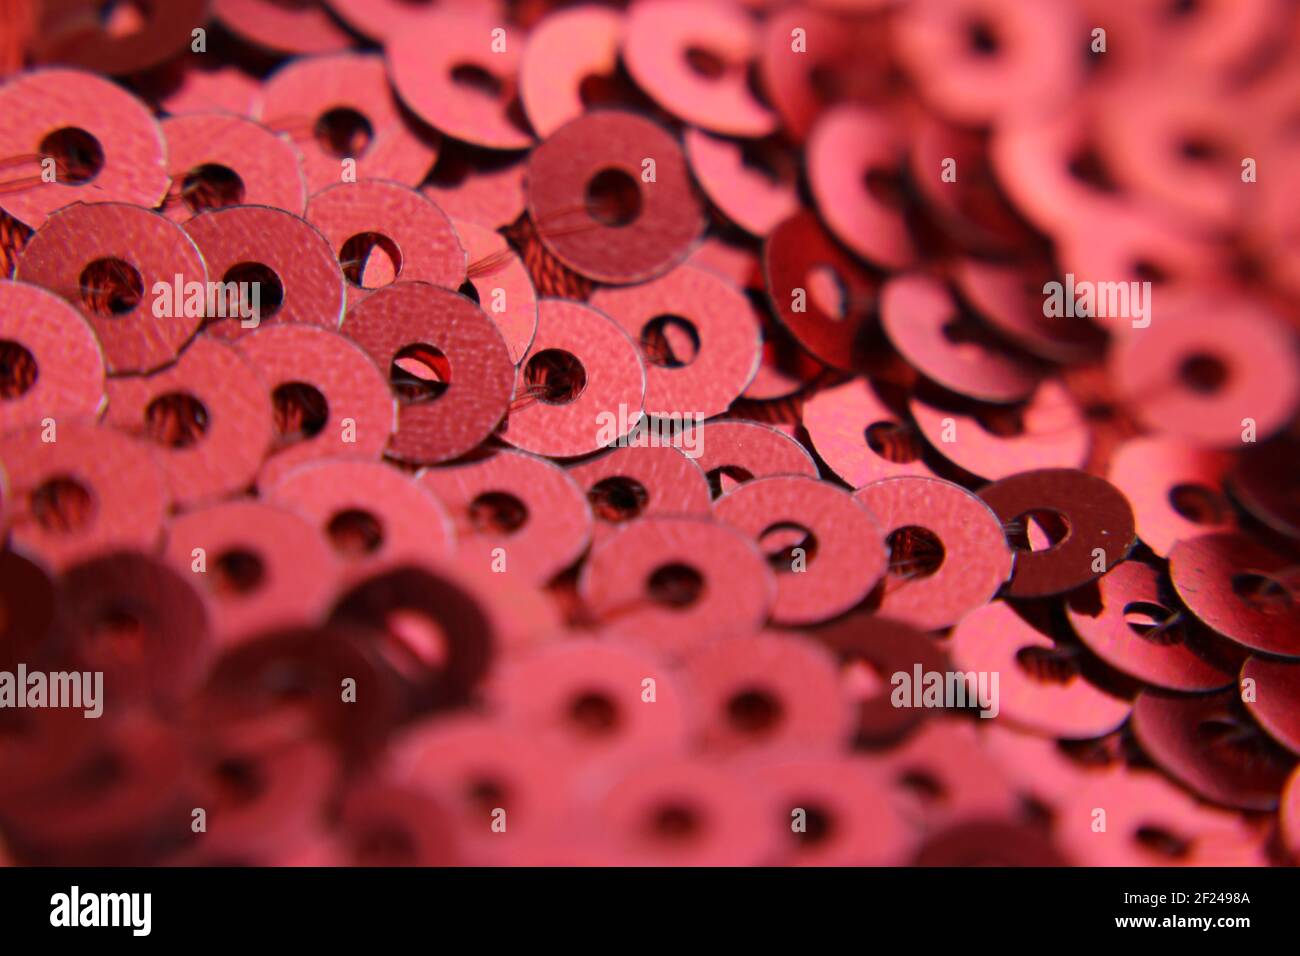 Sfondo astratto, tessuto con applicazioni di molti payettes con il colore rosso scuro. Foto Stock